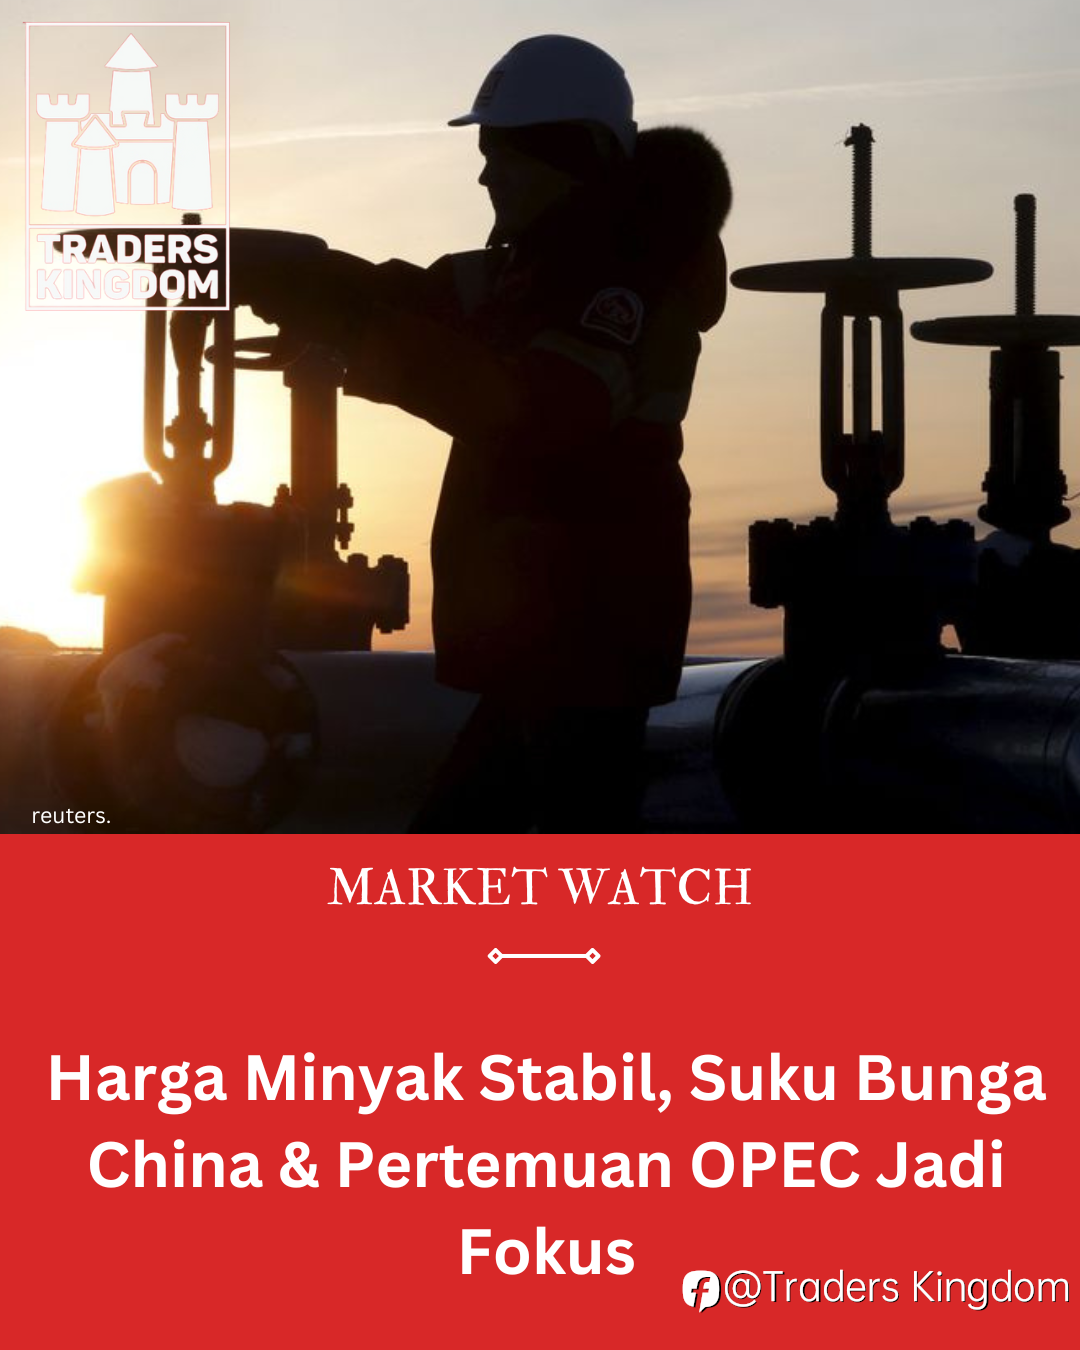 Harga Minyak Stabil, Suku Bunga China & Pertemuan OPEC Jadi Fokus